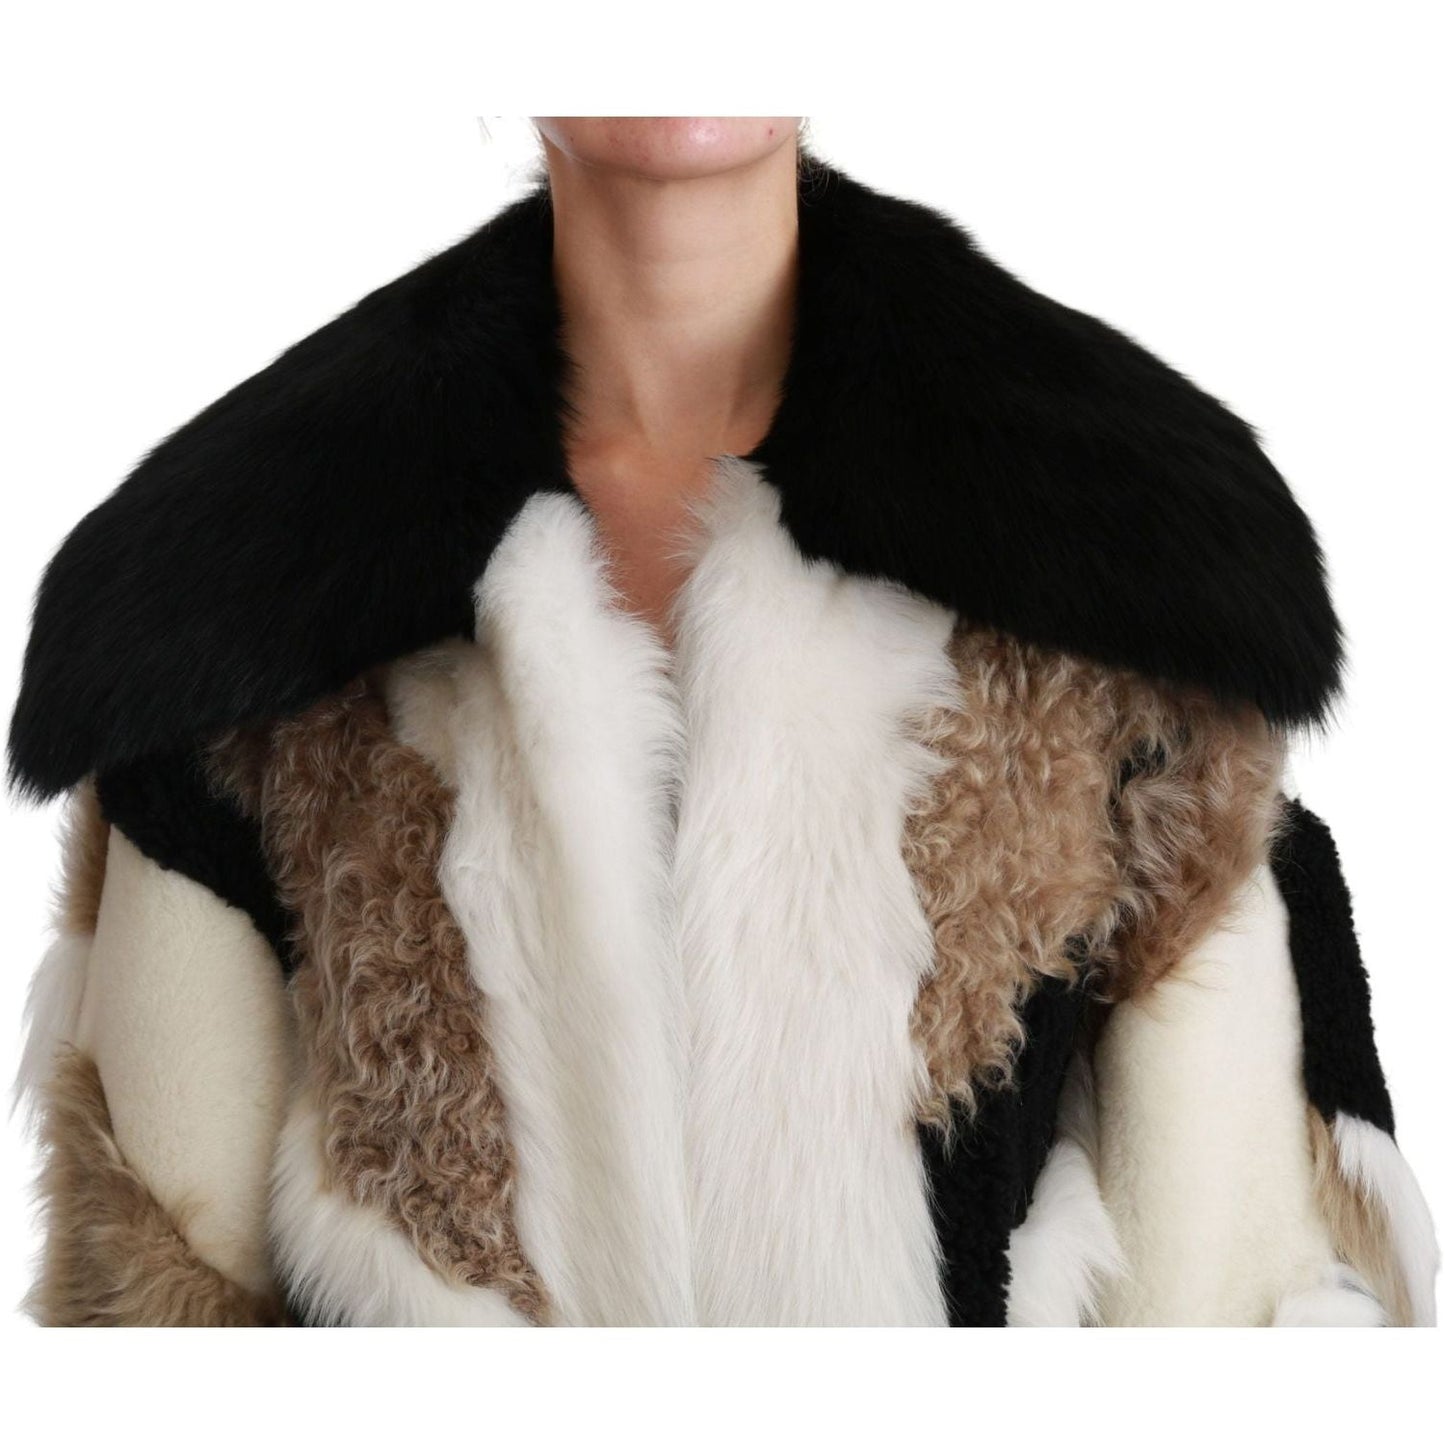 Dolce & Gabbana Elegant Multicolor Shearling Cape Coat Coats & Jackets sheep-fur-shearling-cape-jacket-coat